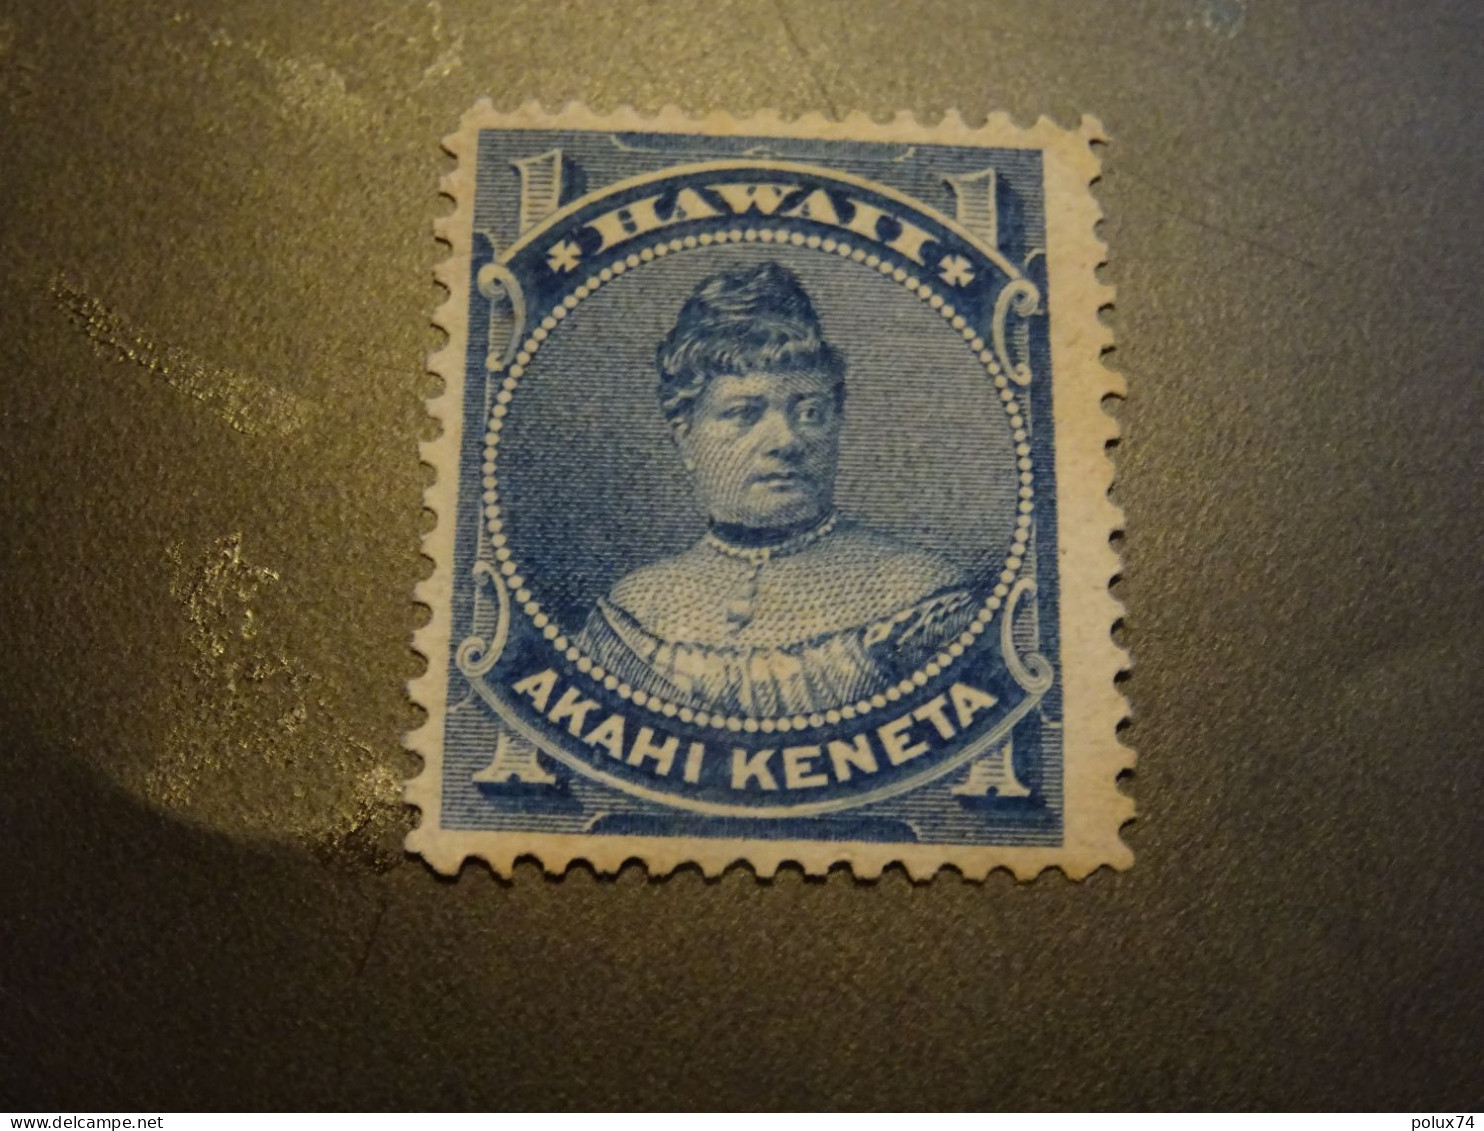 HAWAII 1882 SG - Hawai